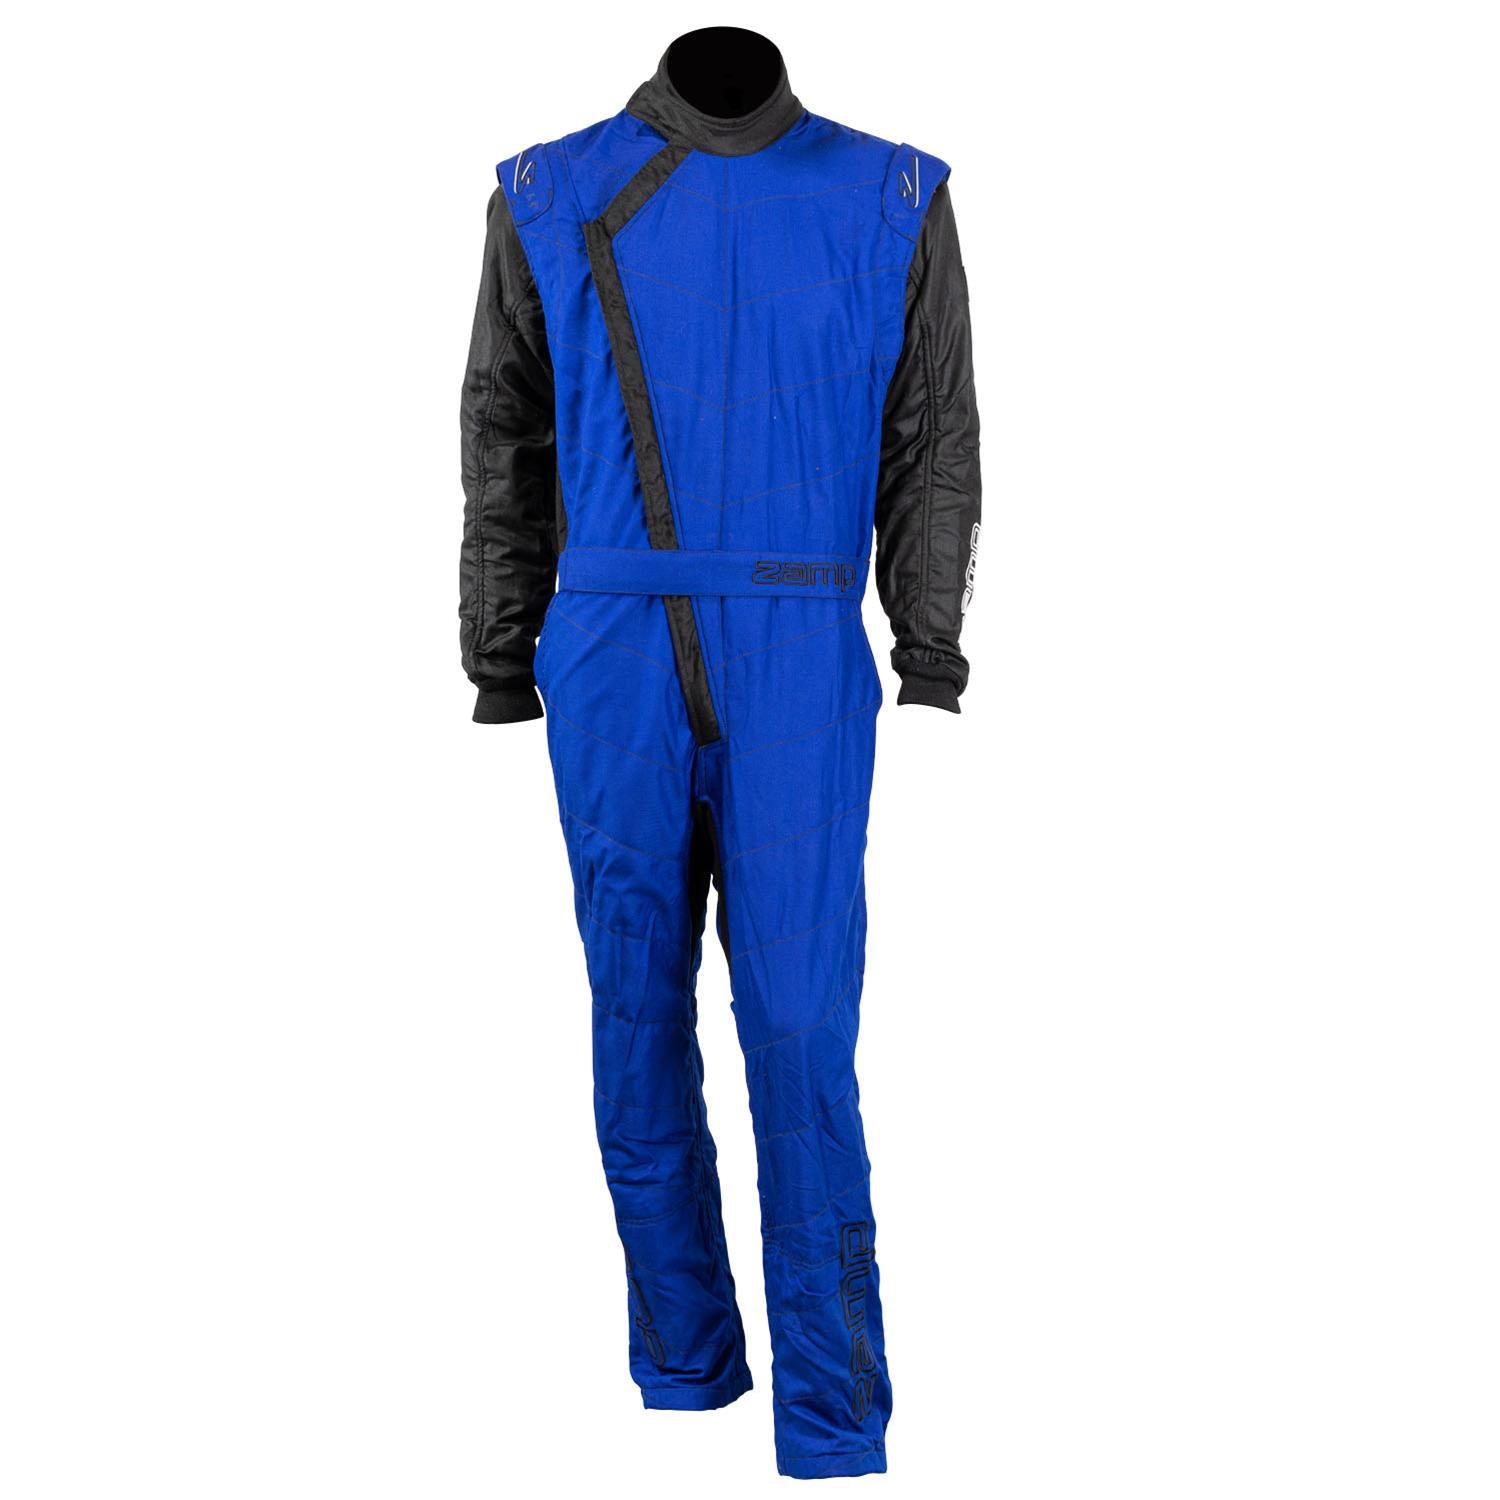 ZAMP Racing ZR-40 Race Suit Blue R07C04M